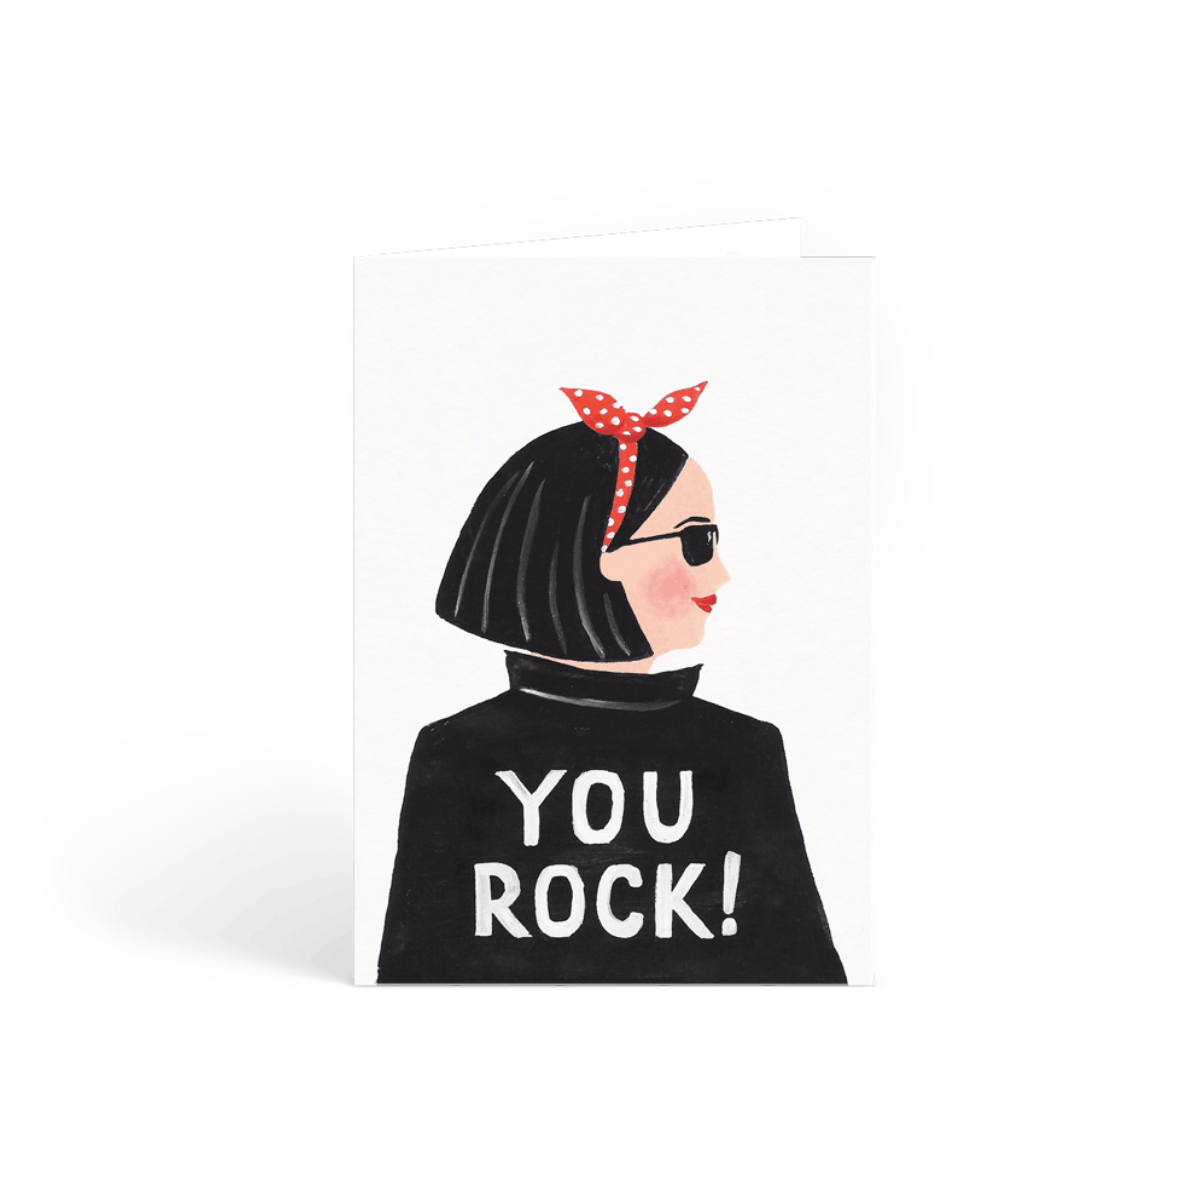 Hey, You Rock